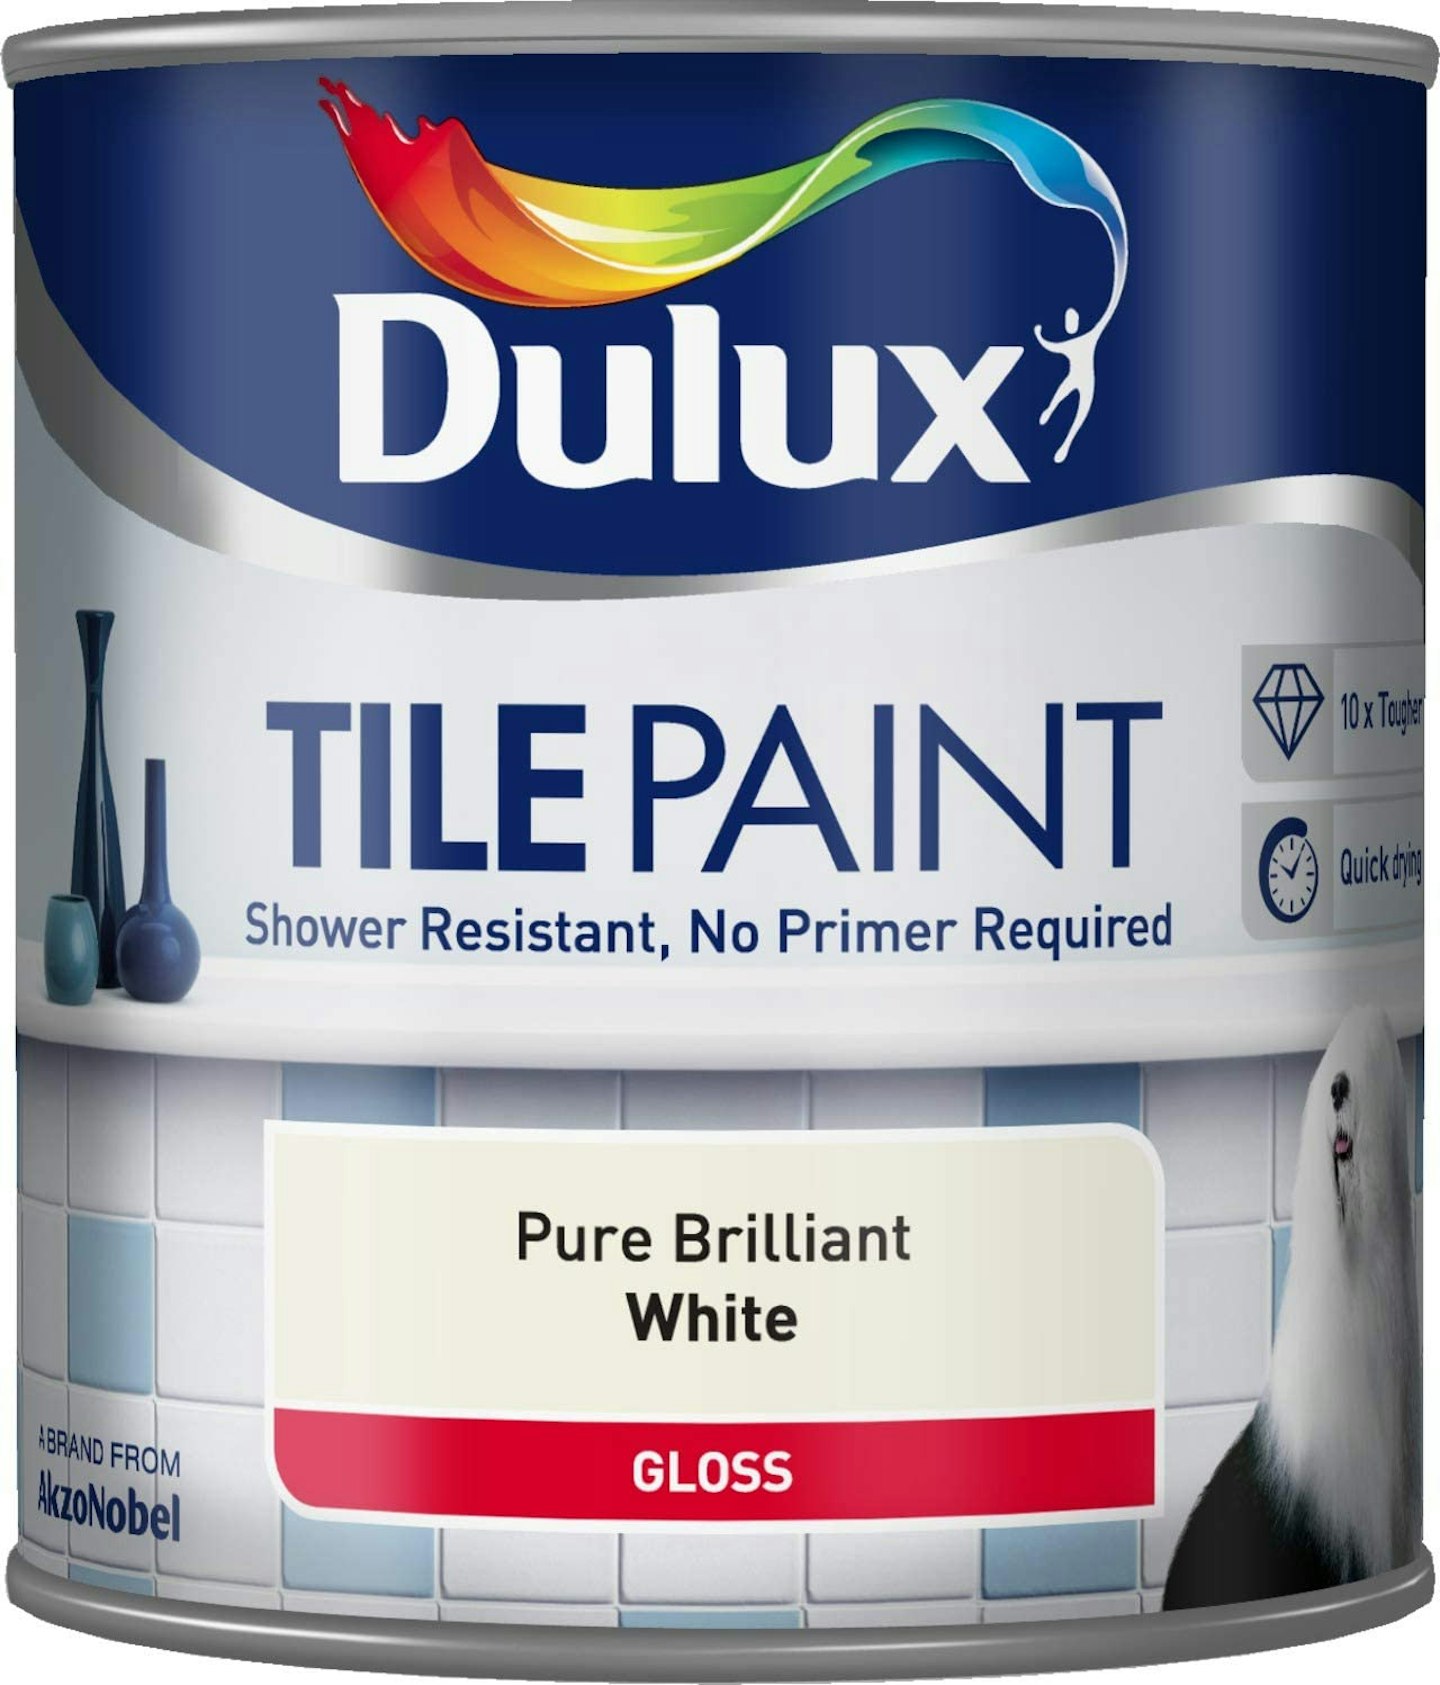 A tin of Dulux tile paint